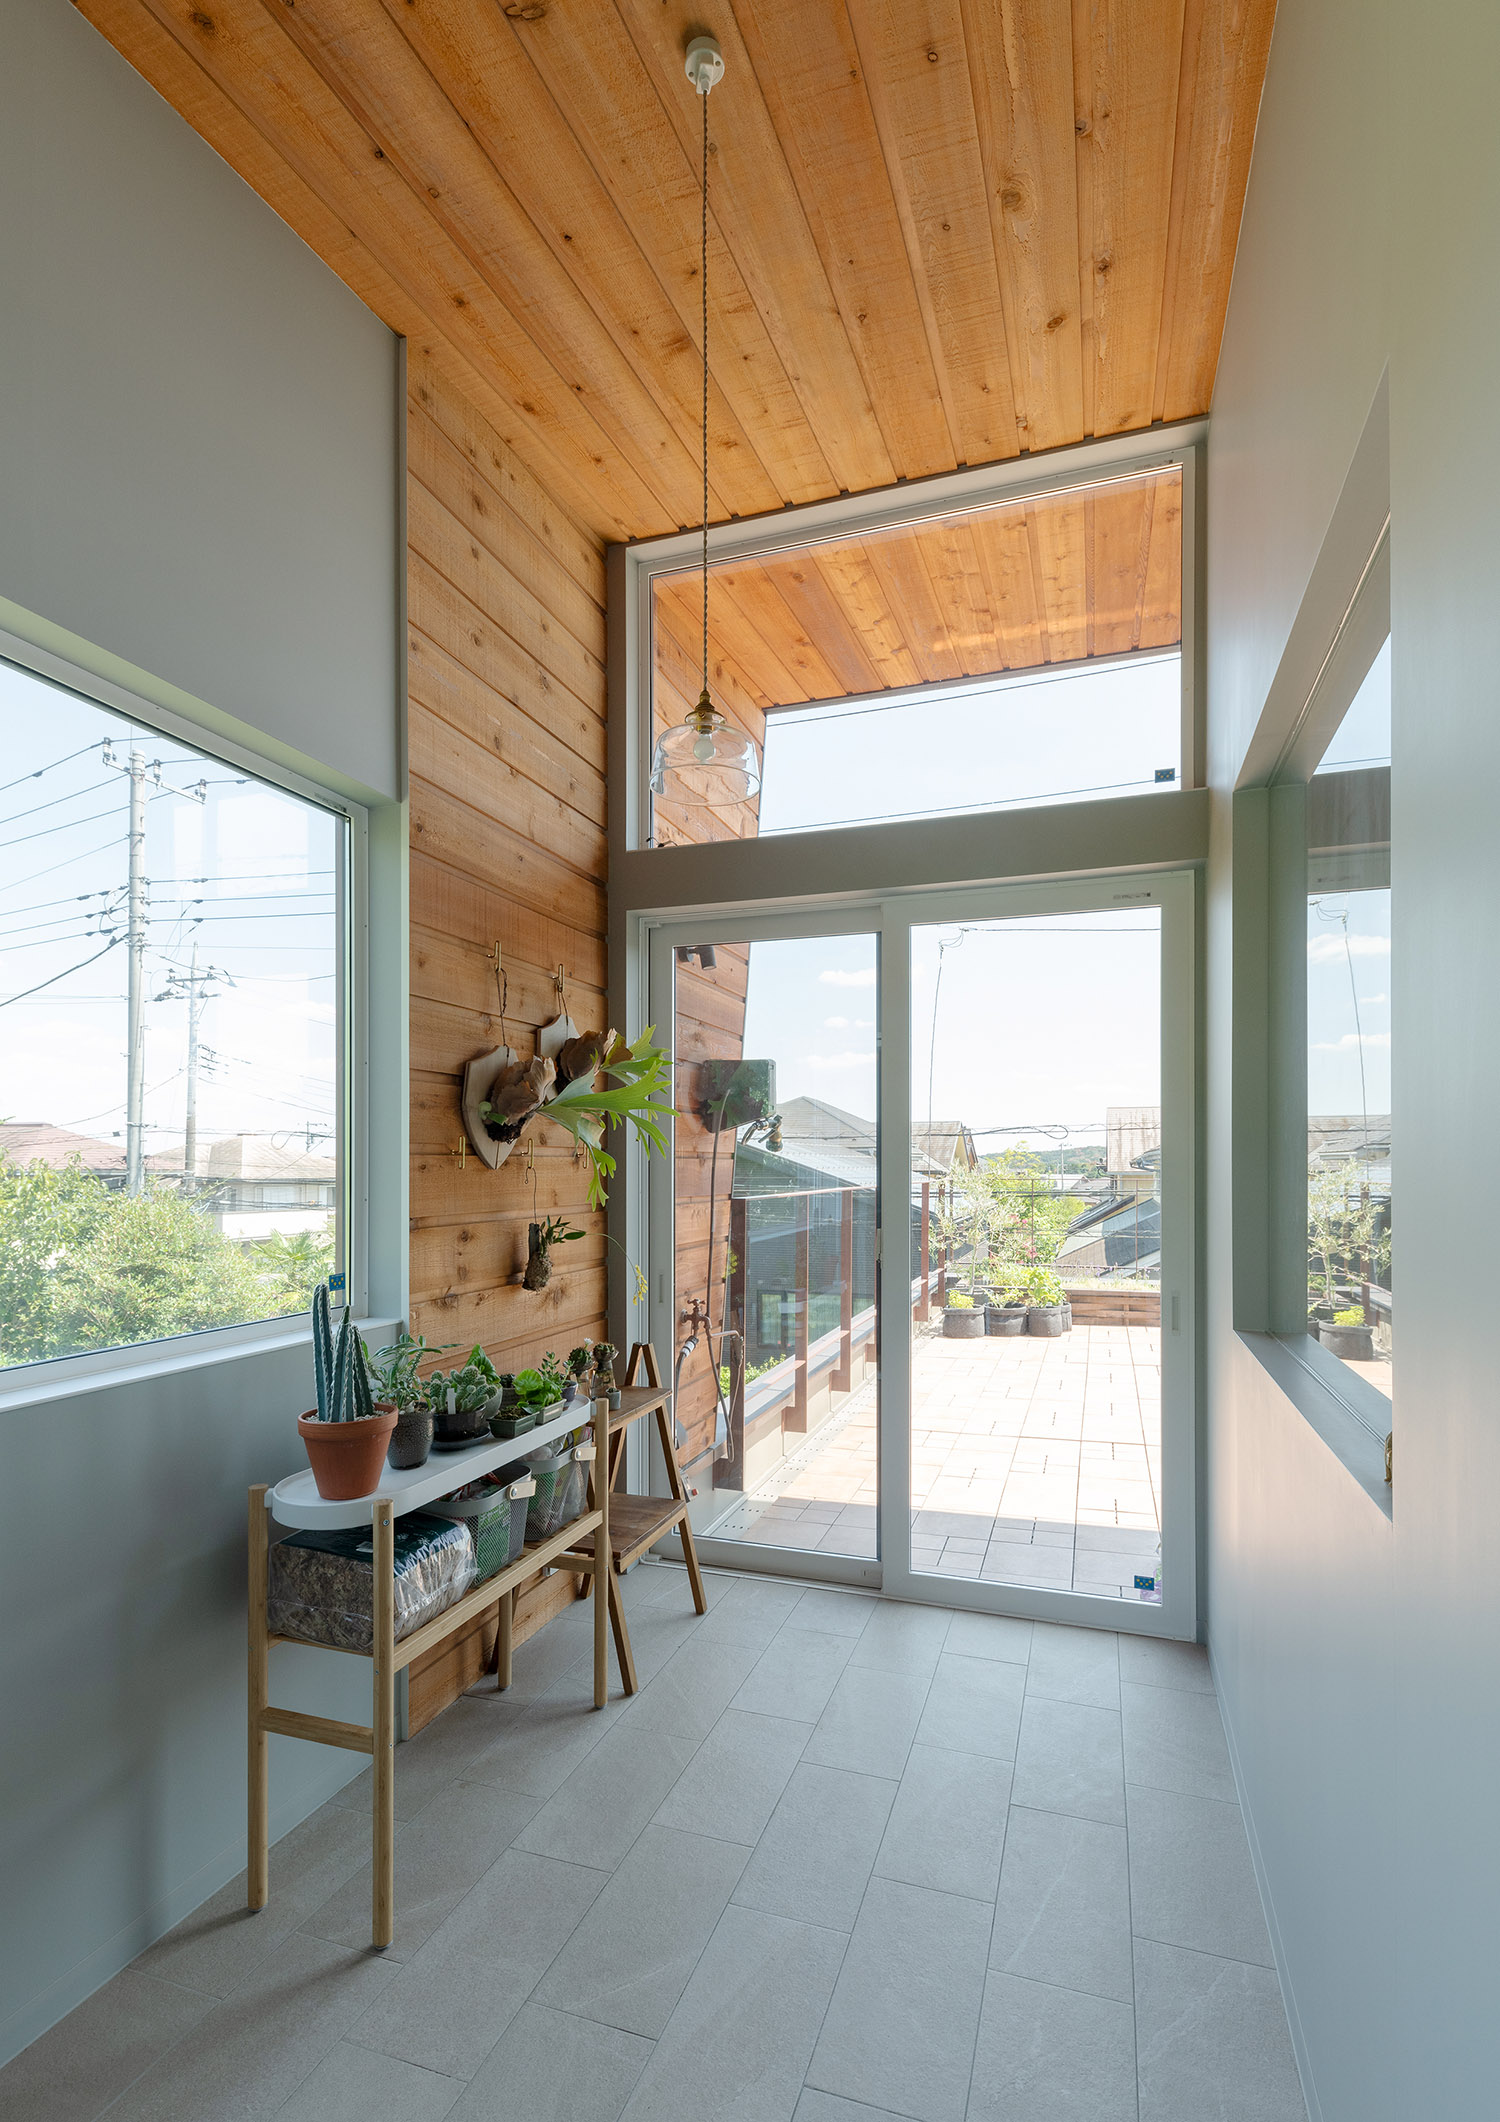 壁と天井が木目になった外との繋がりが感じられる家・デザイン住宅